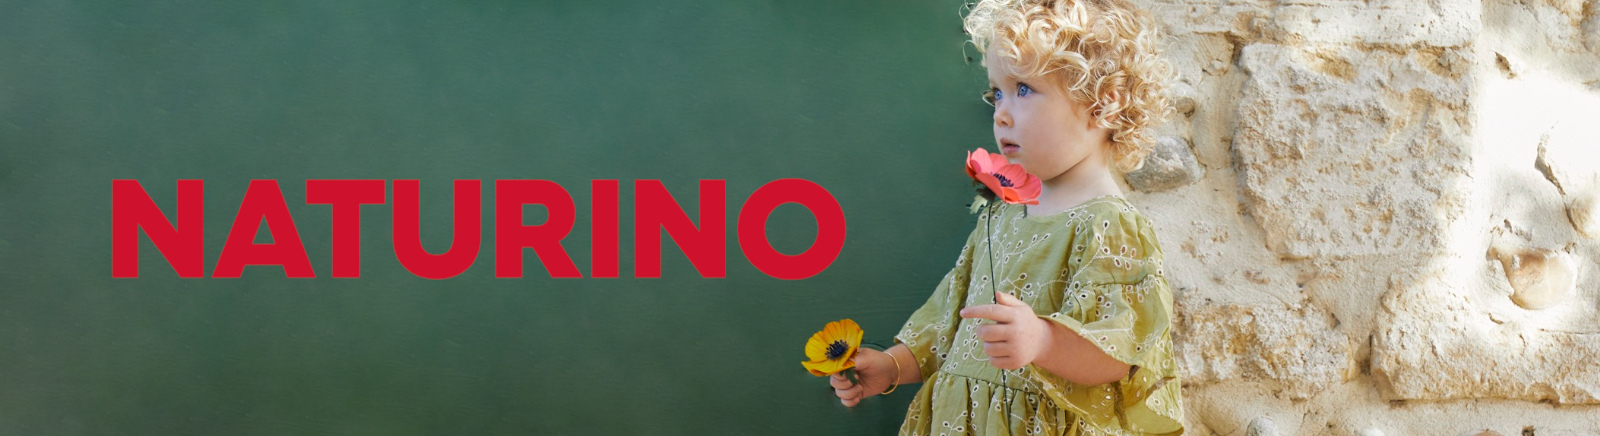 Naturino/Falcotto Kinderschuhe online bestellen im Prange Schuhe Shop